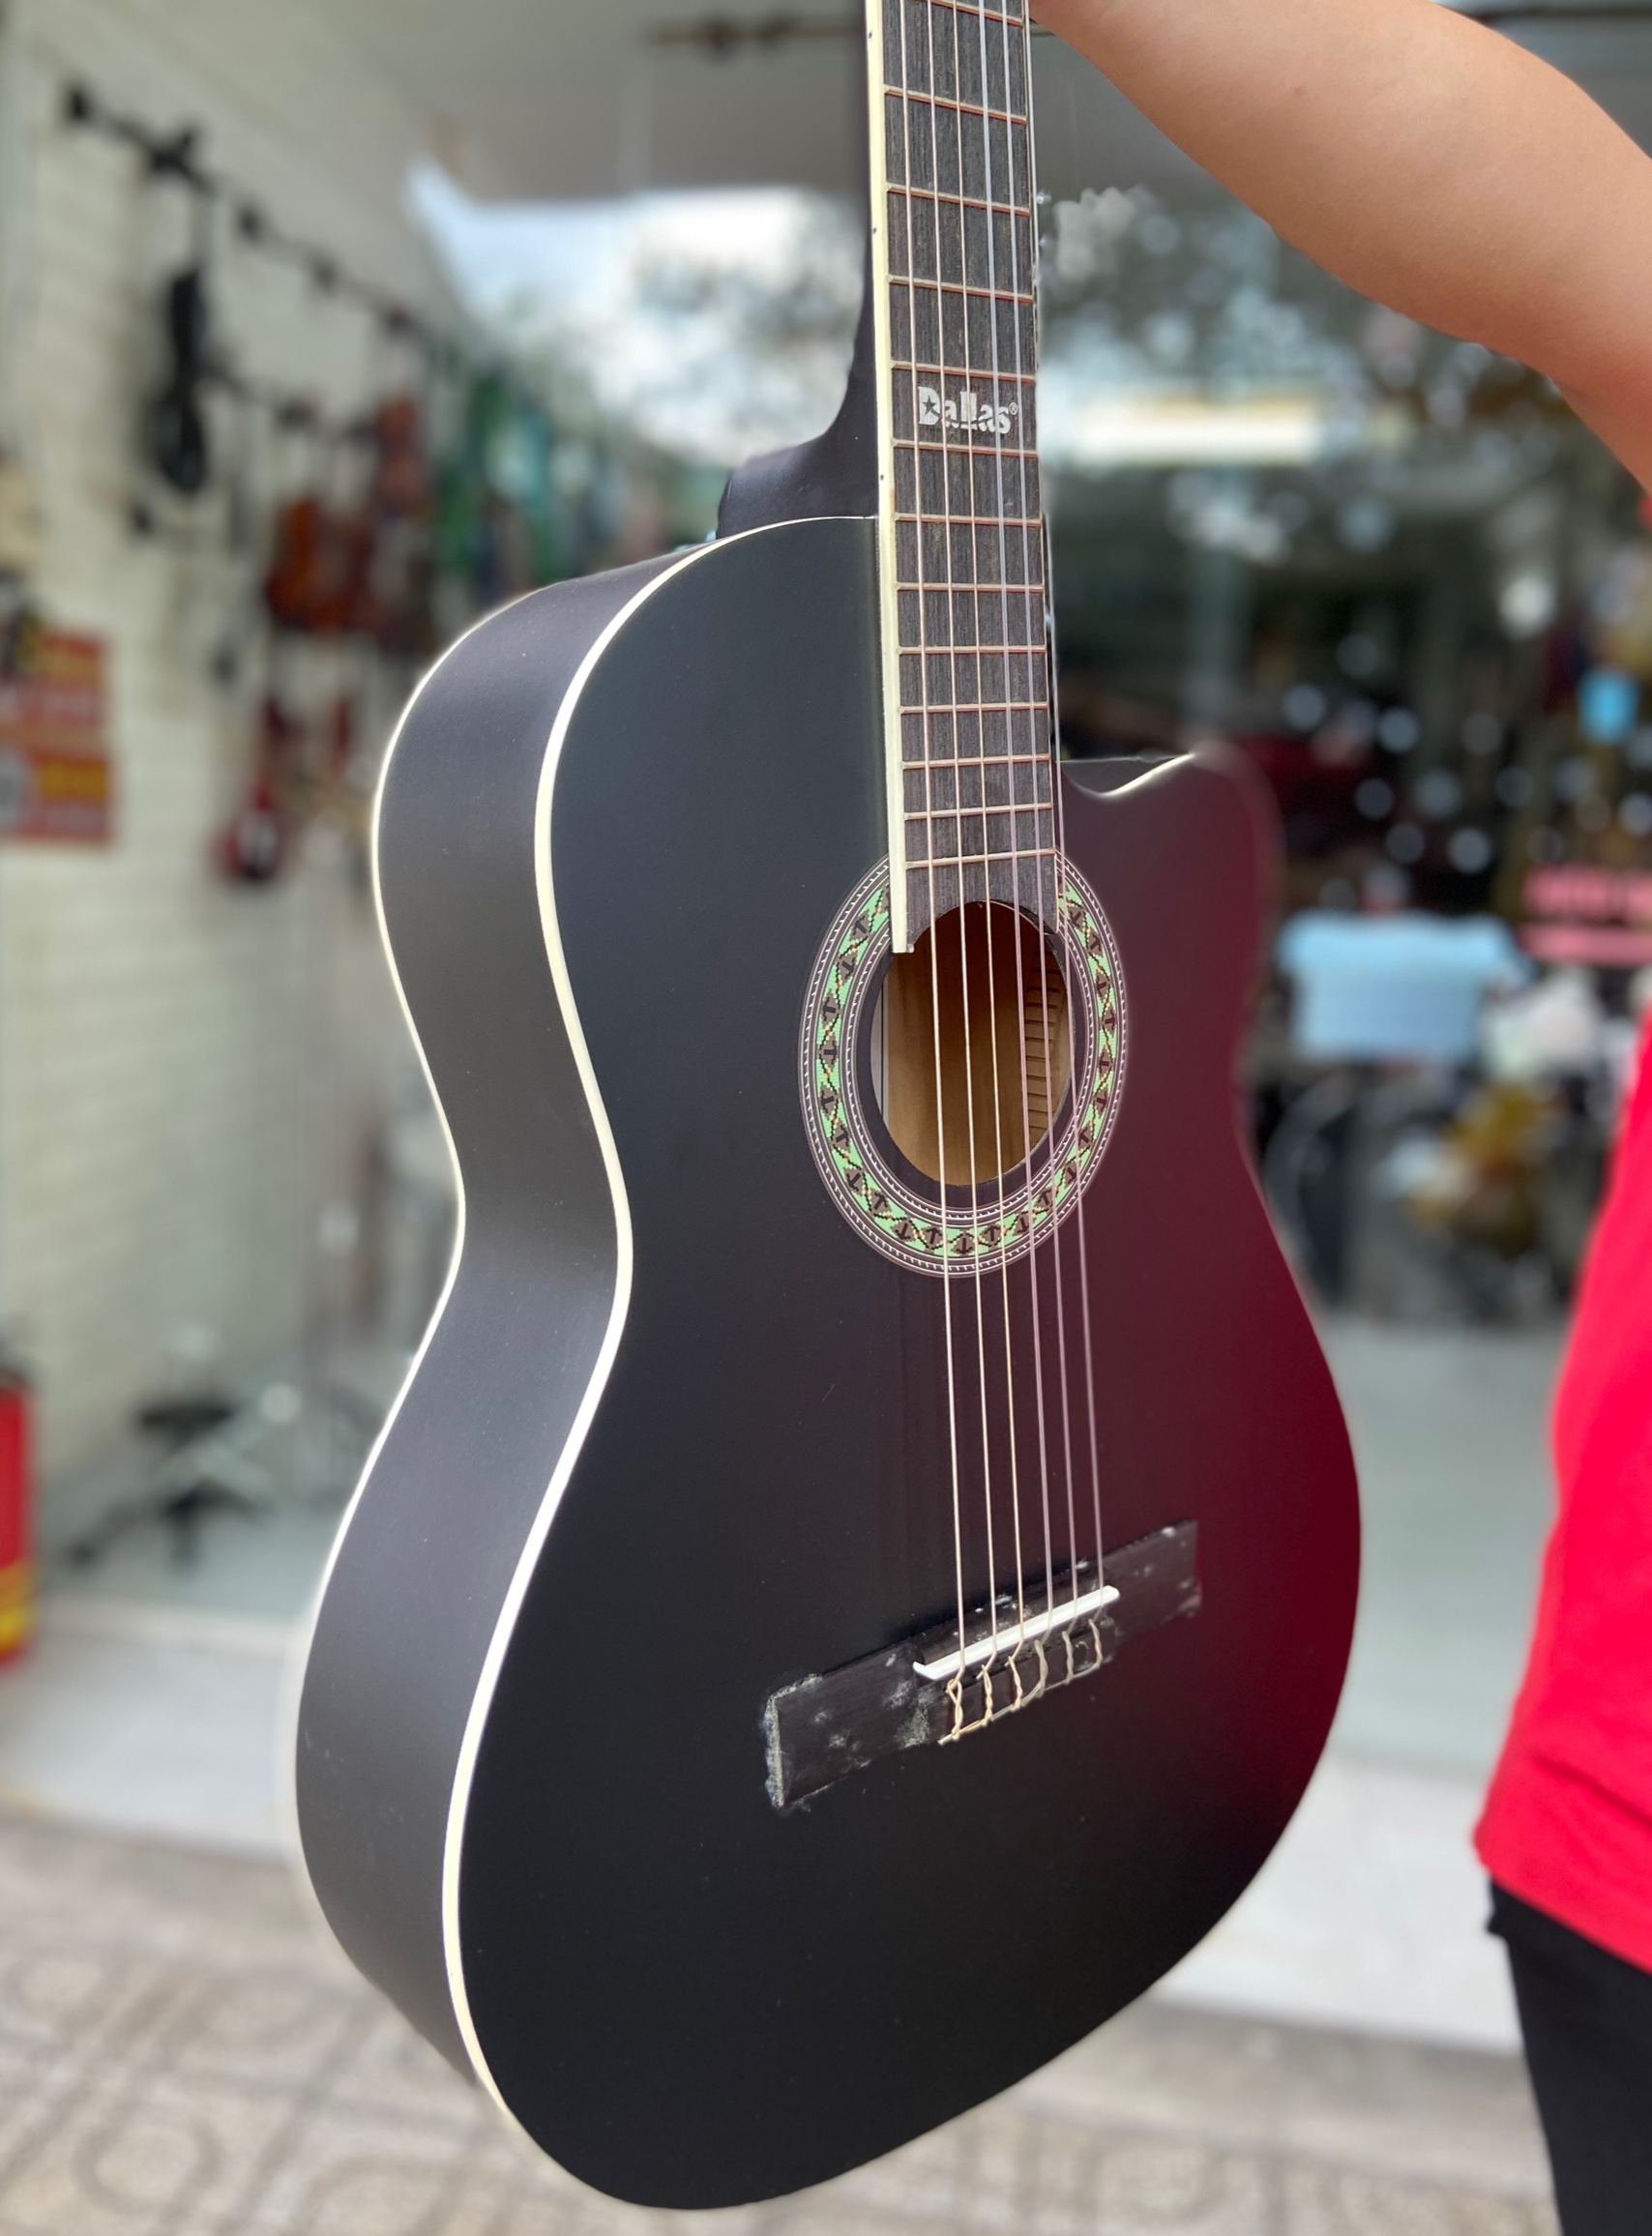 Phong Vân Music chuyên nhập khẩu và phân phối các mẫu guitar, đa dạng sản phẩm; với giá ưu đãi và chất lượng tốt. Nay Phong Vân Music giới thiệu một mẫu guitar siêu hot trong thị trường âm nhạc; Đàn guitar classic Dallas DL-S39 chính hãng.